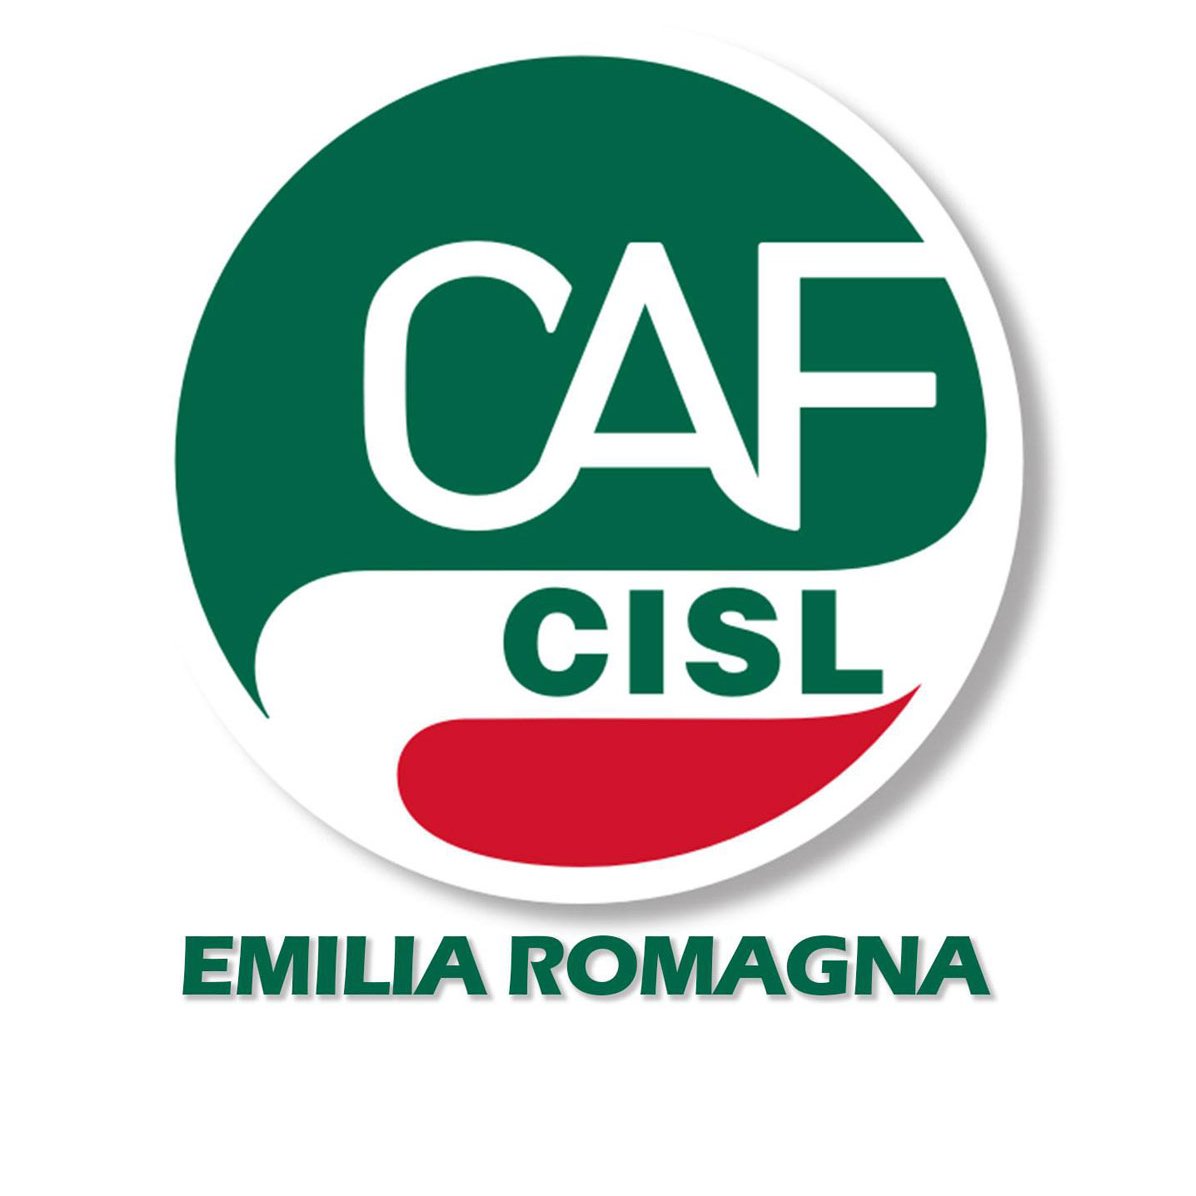 Caf_Cisl_ER Profile Picture